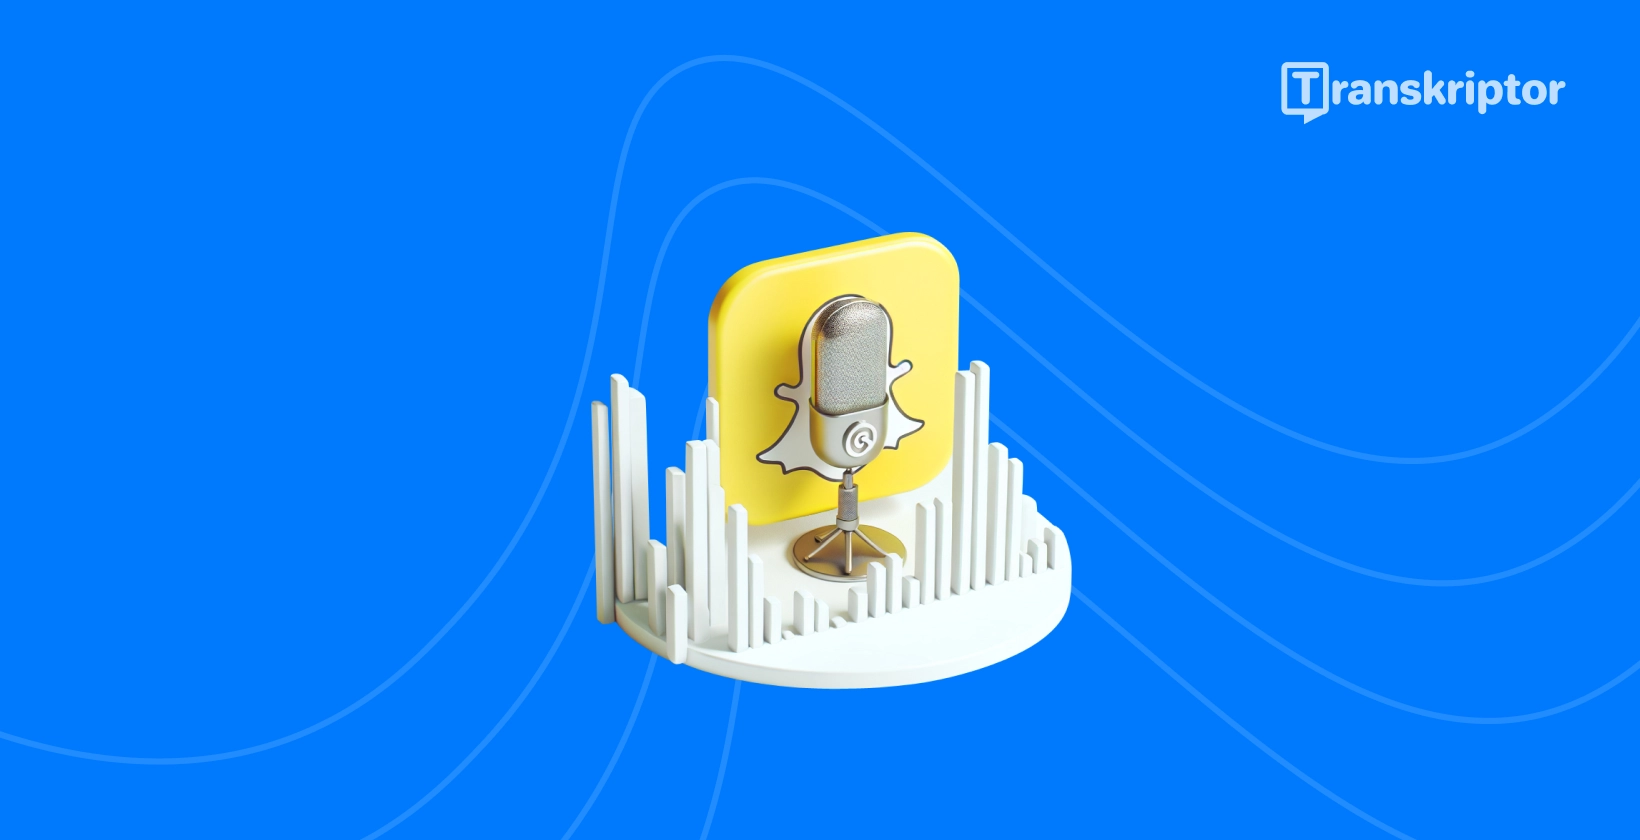 Snapchat spøgelses- og mikrofonikon, der symboliserer lydtransskriptionsguide af Transkriptor.